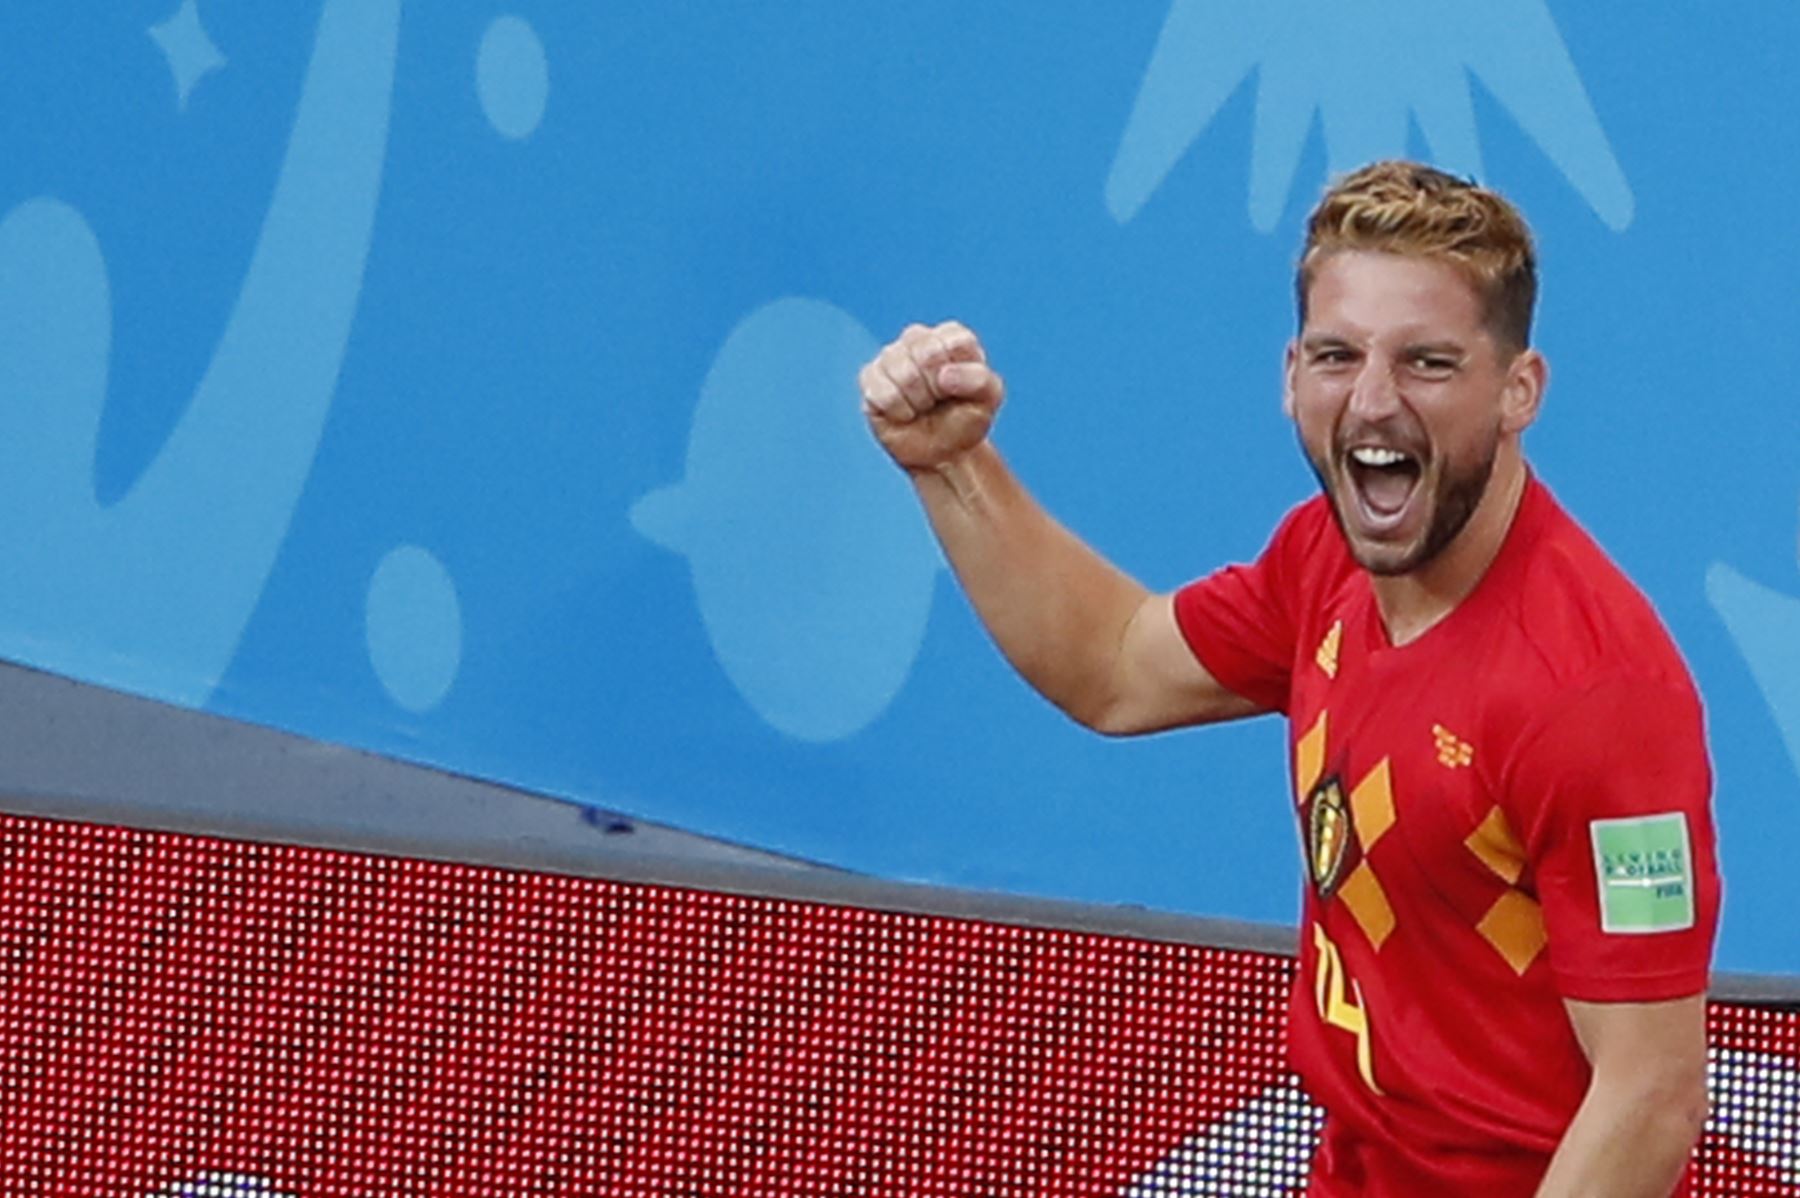 El alero de Bélgica, Dries Mertens, celebra su gol durante el partido de fútbol del Grupo G de la Copa Mundial Rusia 2018 entre Bélgica y Panamá. Foto: AFP